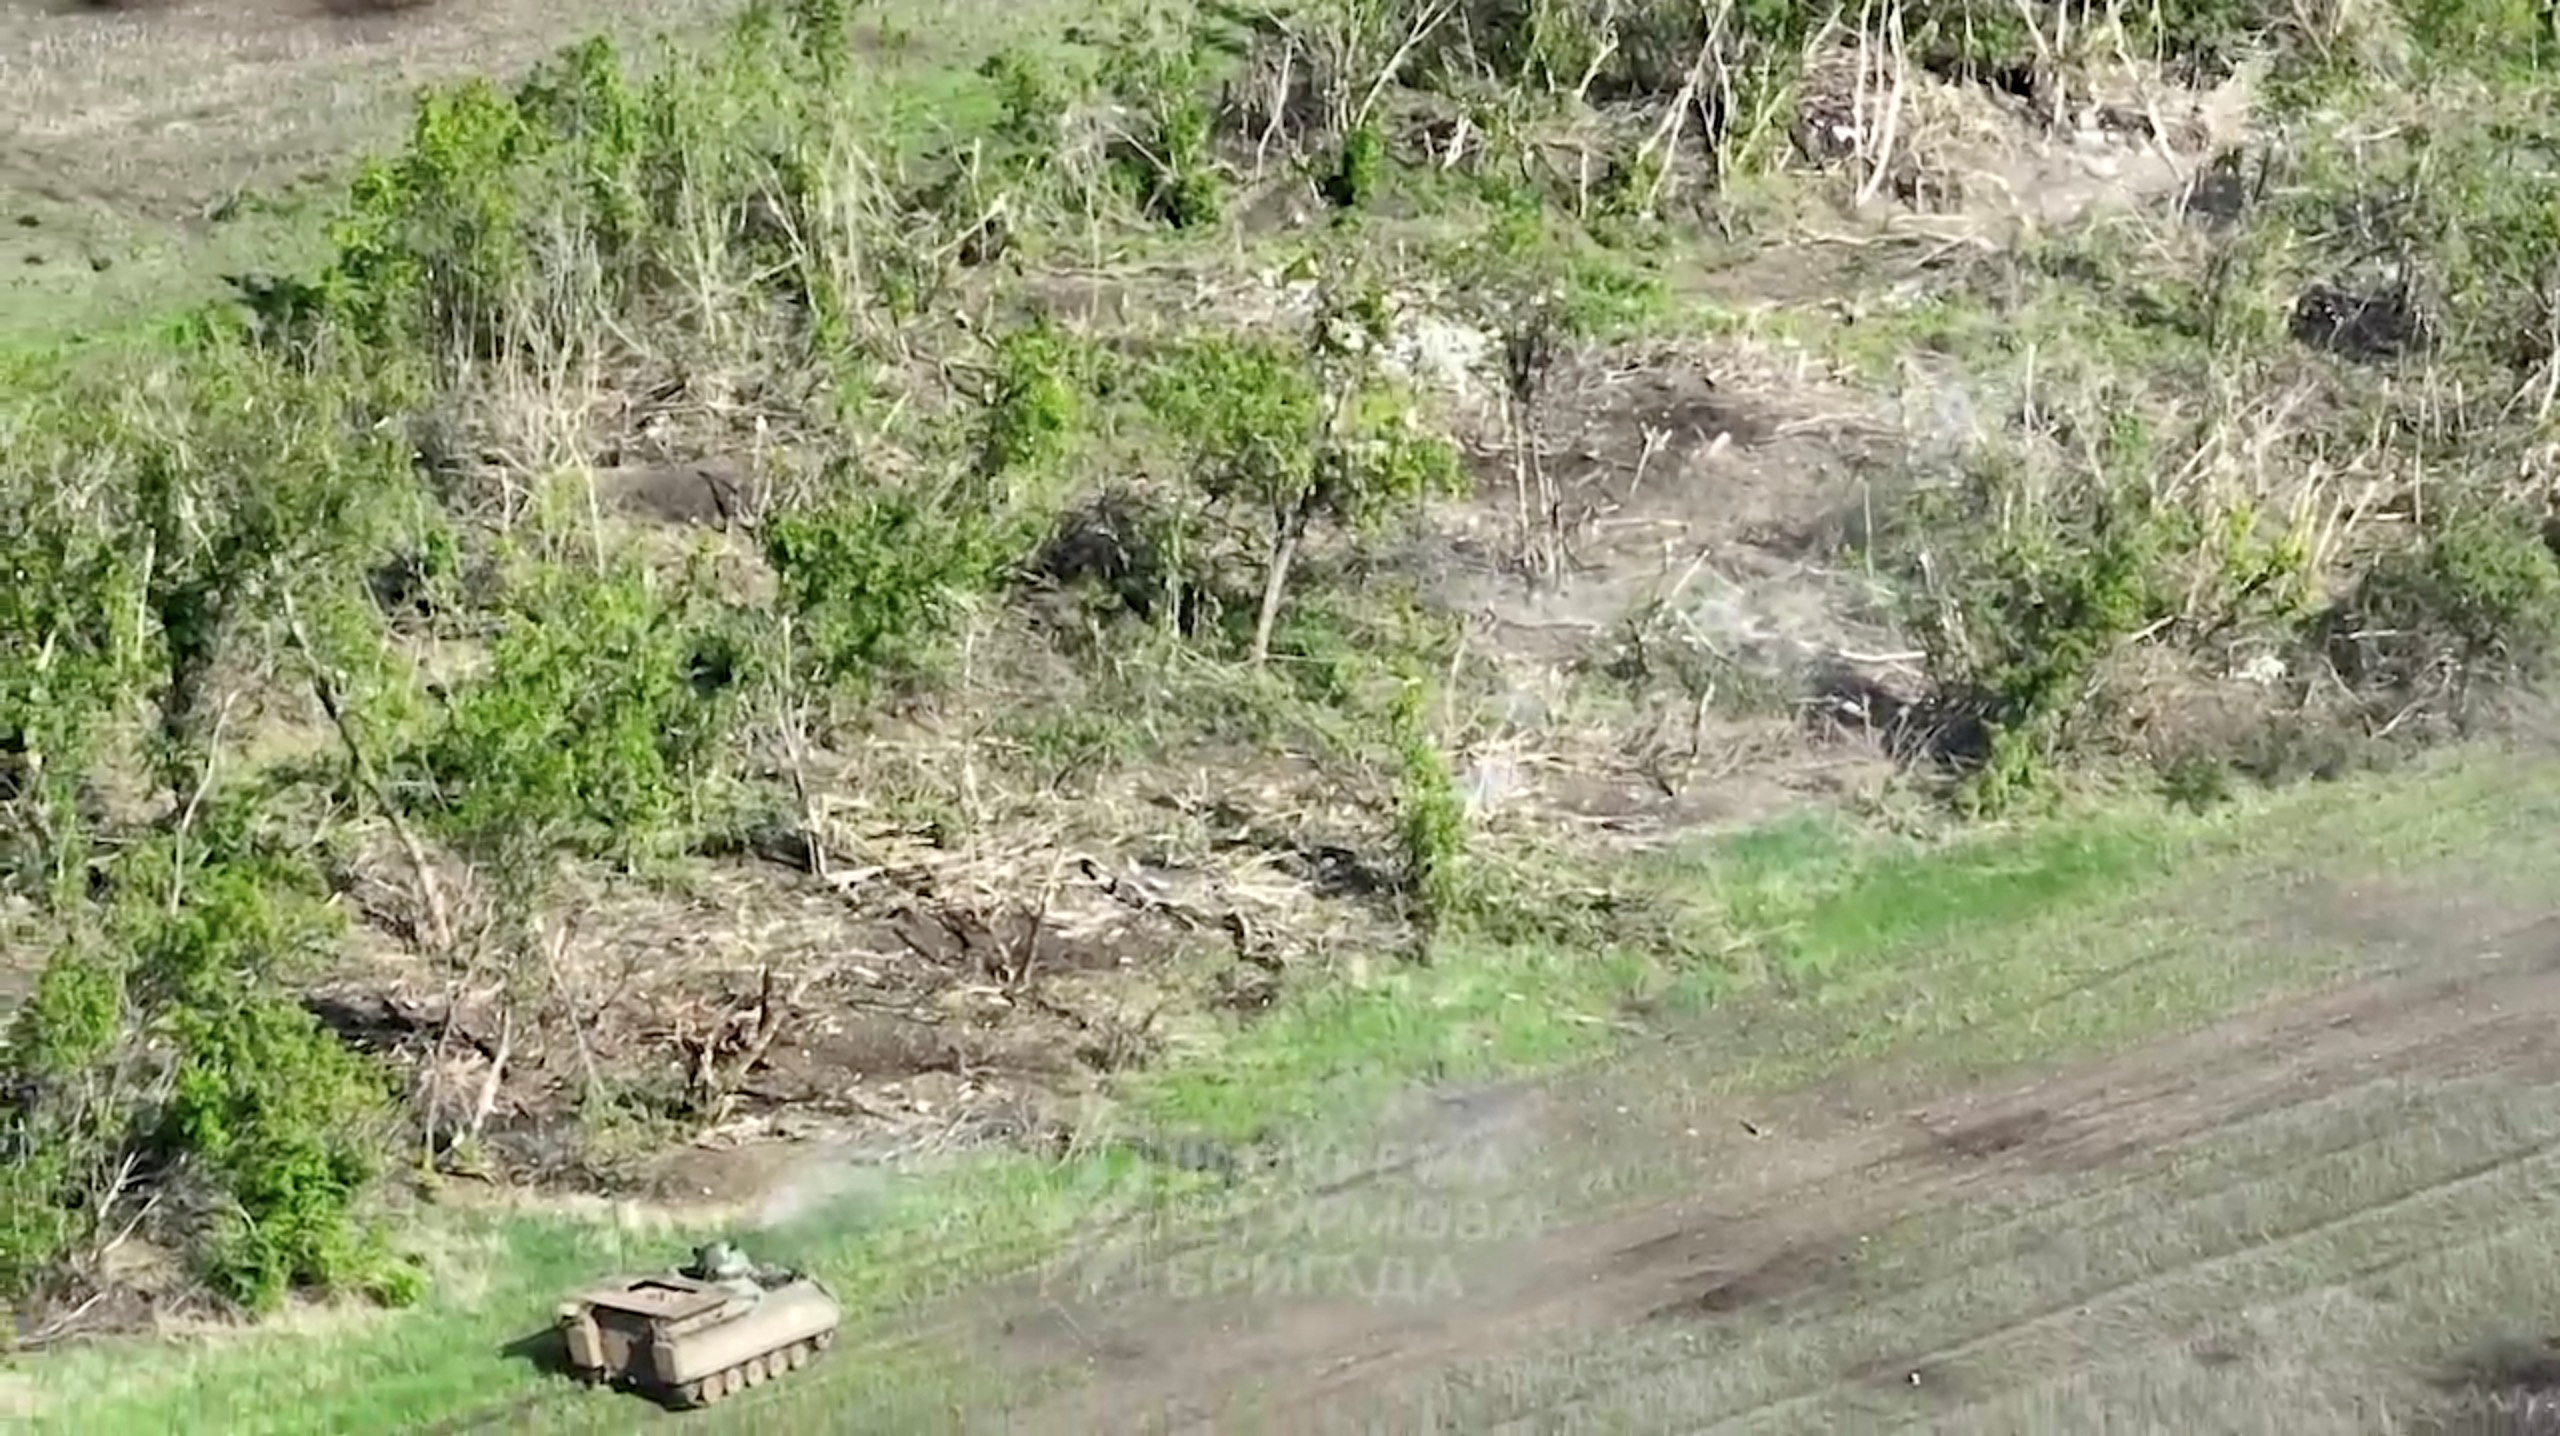 Vista de un vehículo militar mientras las fuerzas ucranianas destruyen posiciones rusas en dirección a Bakhmut, cerca de Klischiivka (3ª Brigada de Asalto / Servicio de Prensa de las Fuerzas Armadas de Ucrania/REUTERS)